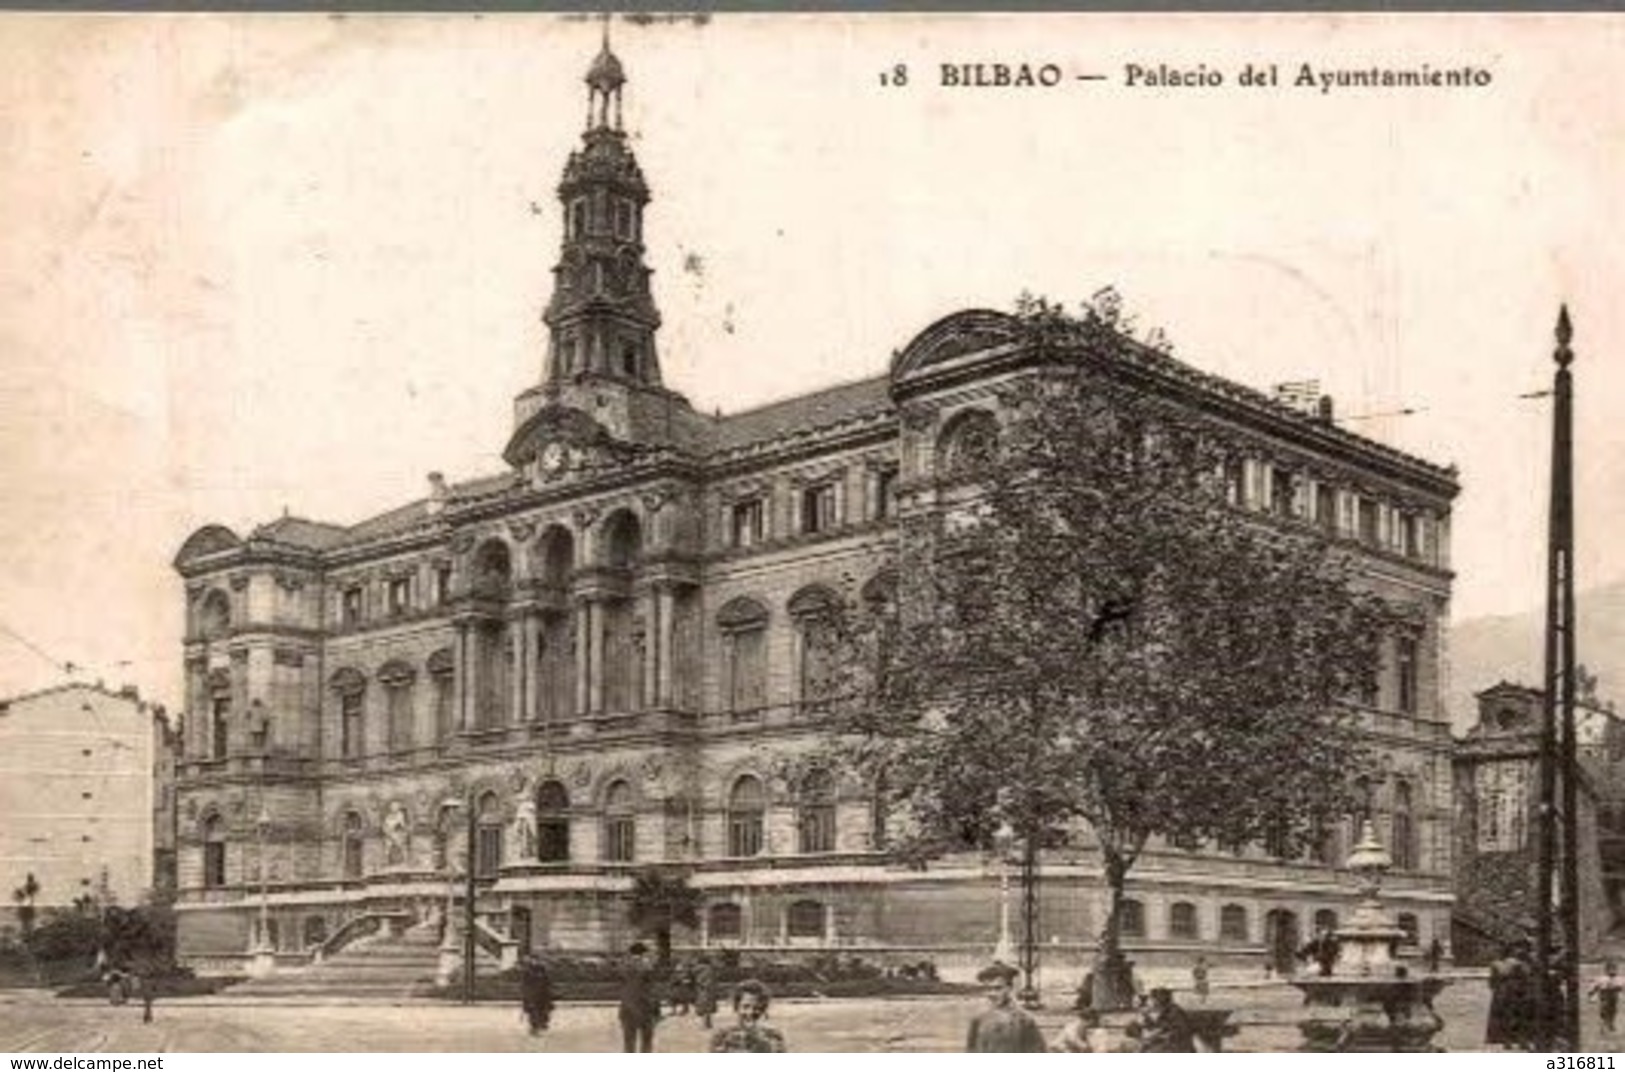 BILBAO PALACIO DEL AYUNTAMIENTO - Vizcaya (Bilbao)